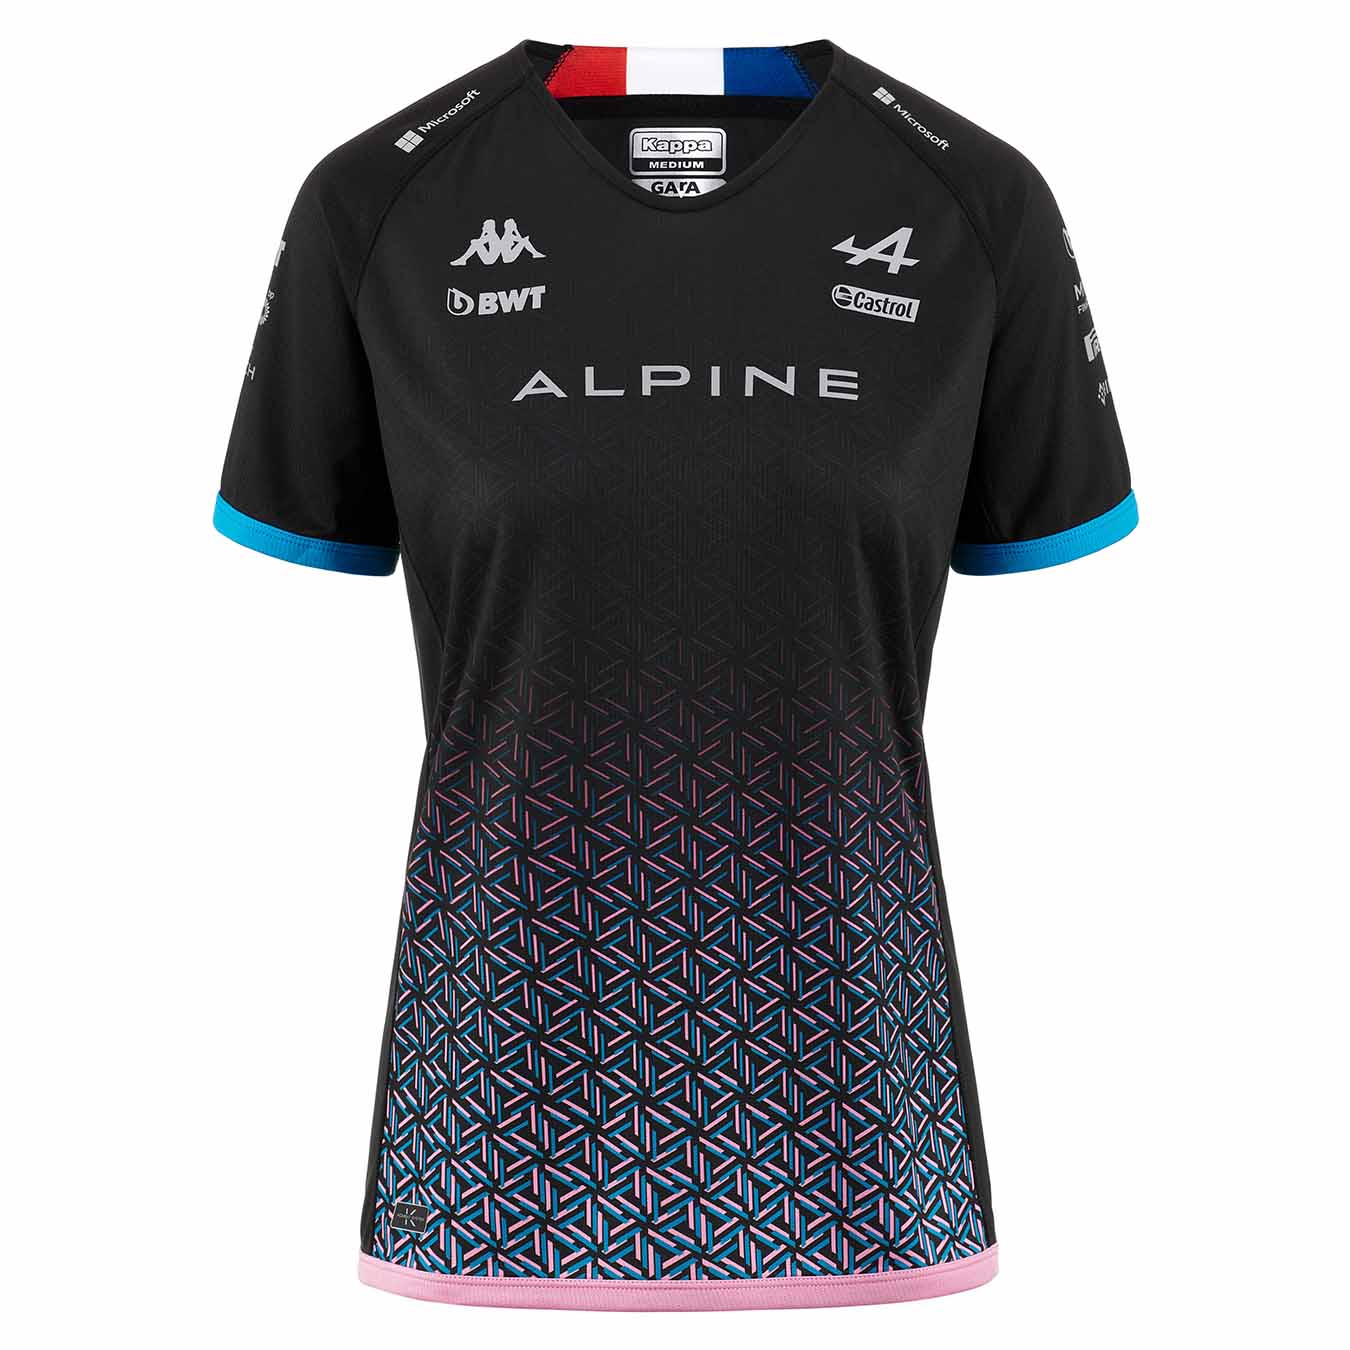 Alpine F1 Team Gasly T-Shirt Lady